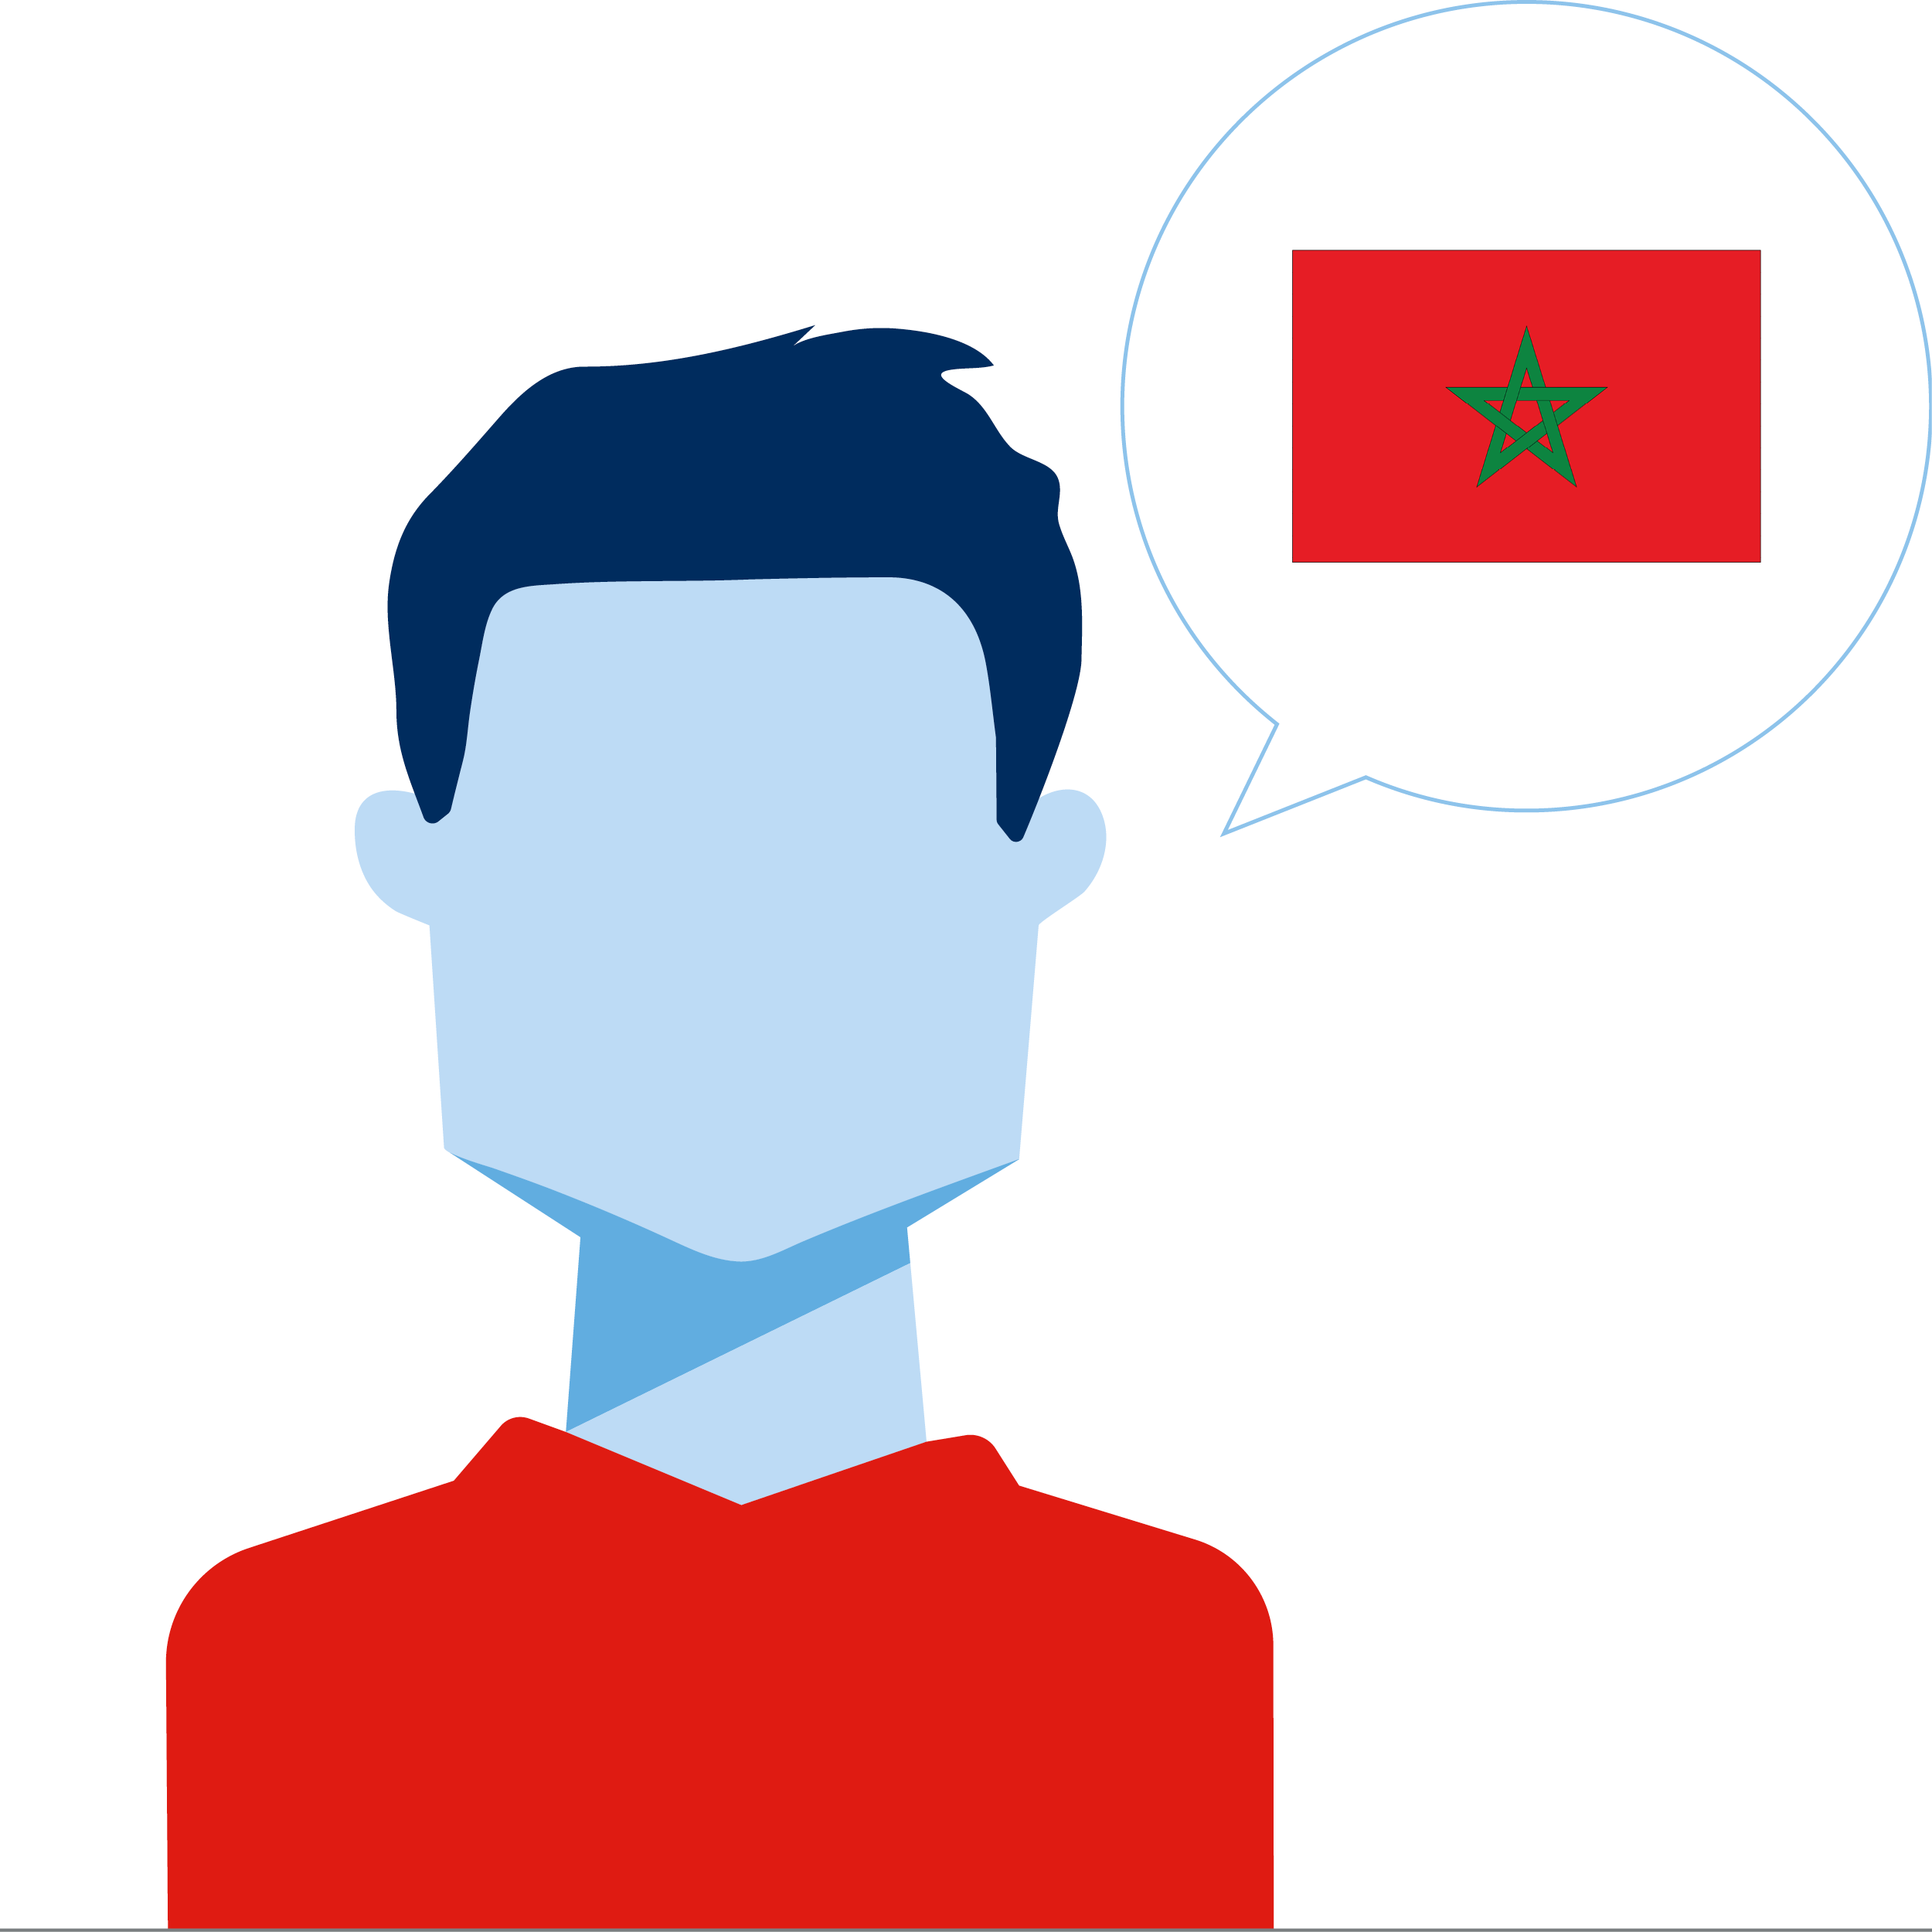 Stemme marokkansk